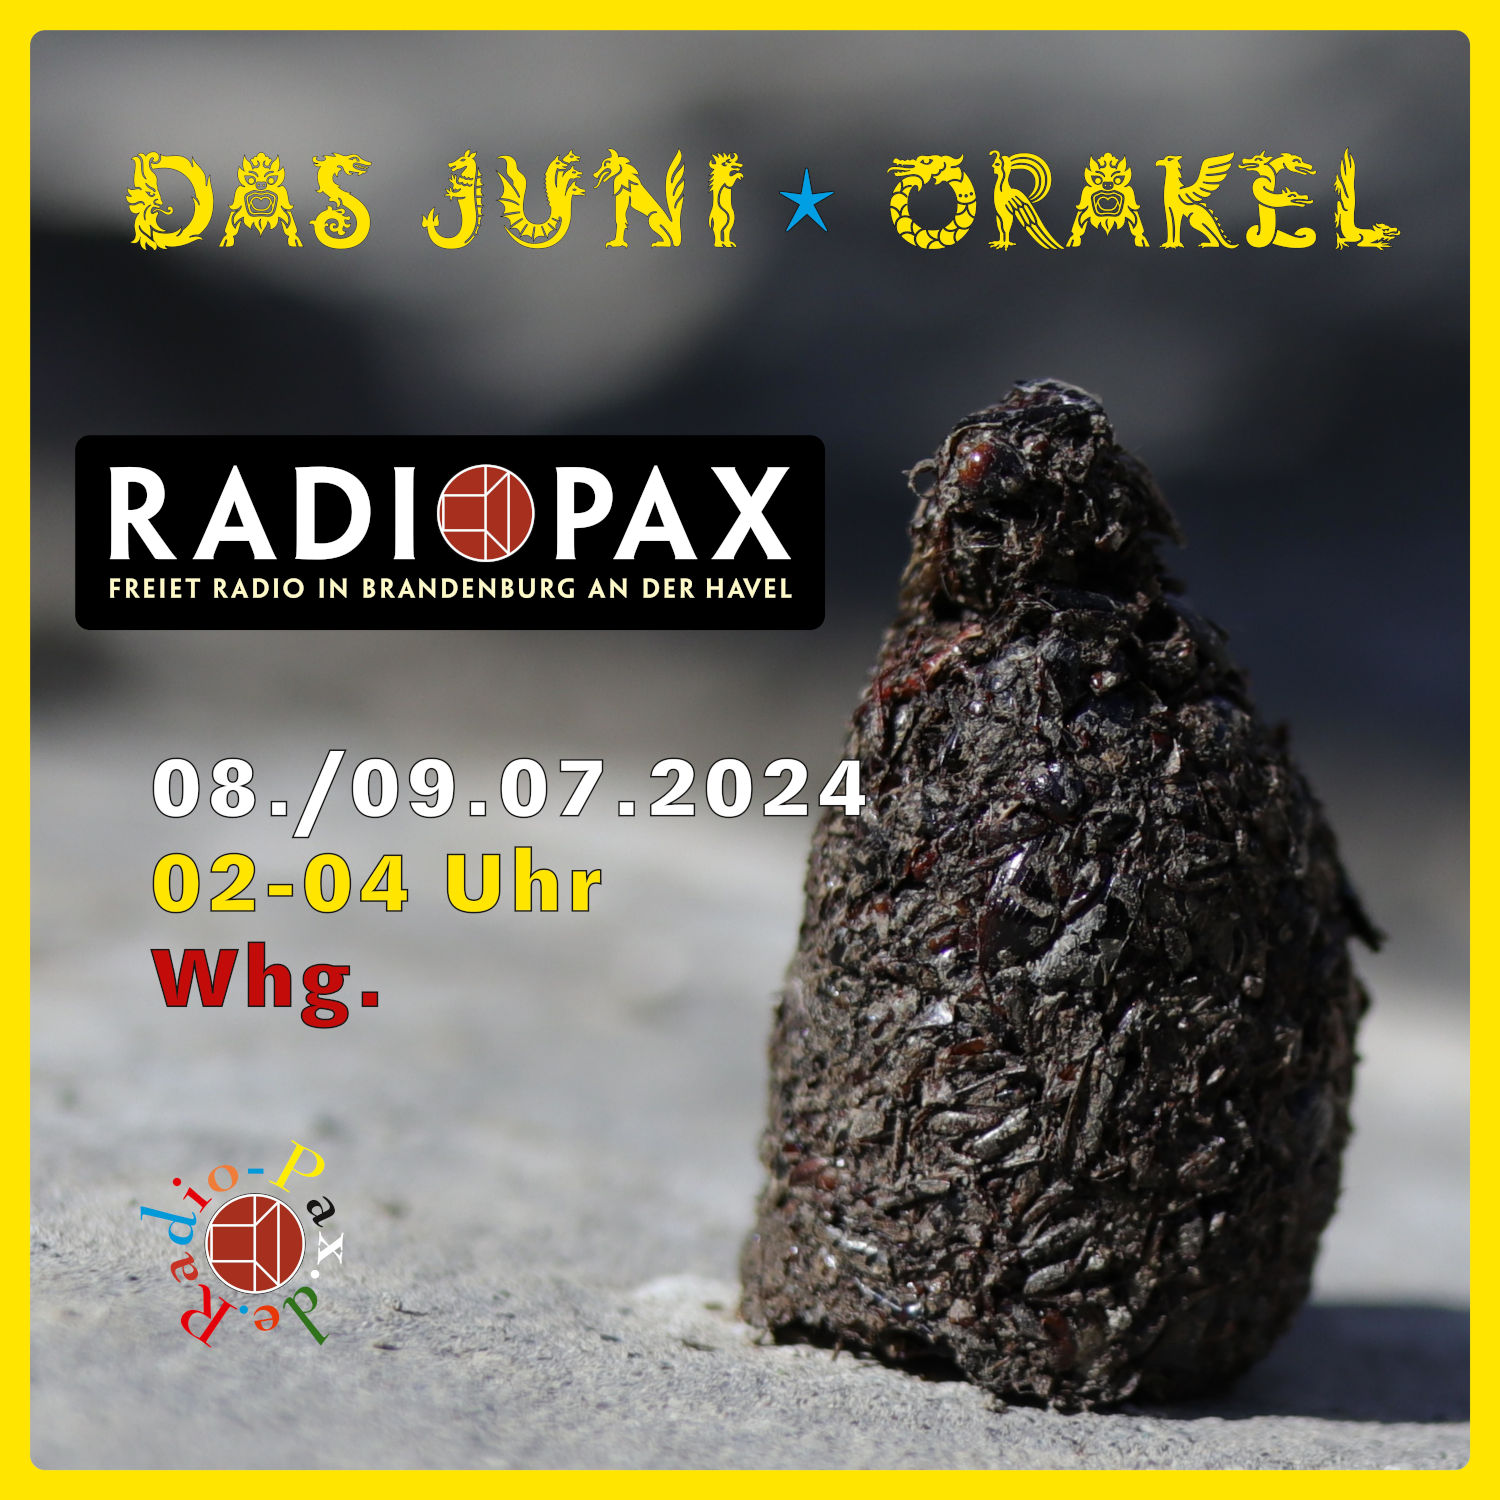 RADIO PAX (Whg. der Junisendung) am 08.07. von 2-4 Uhr